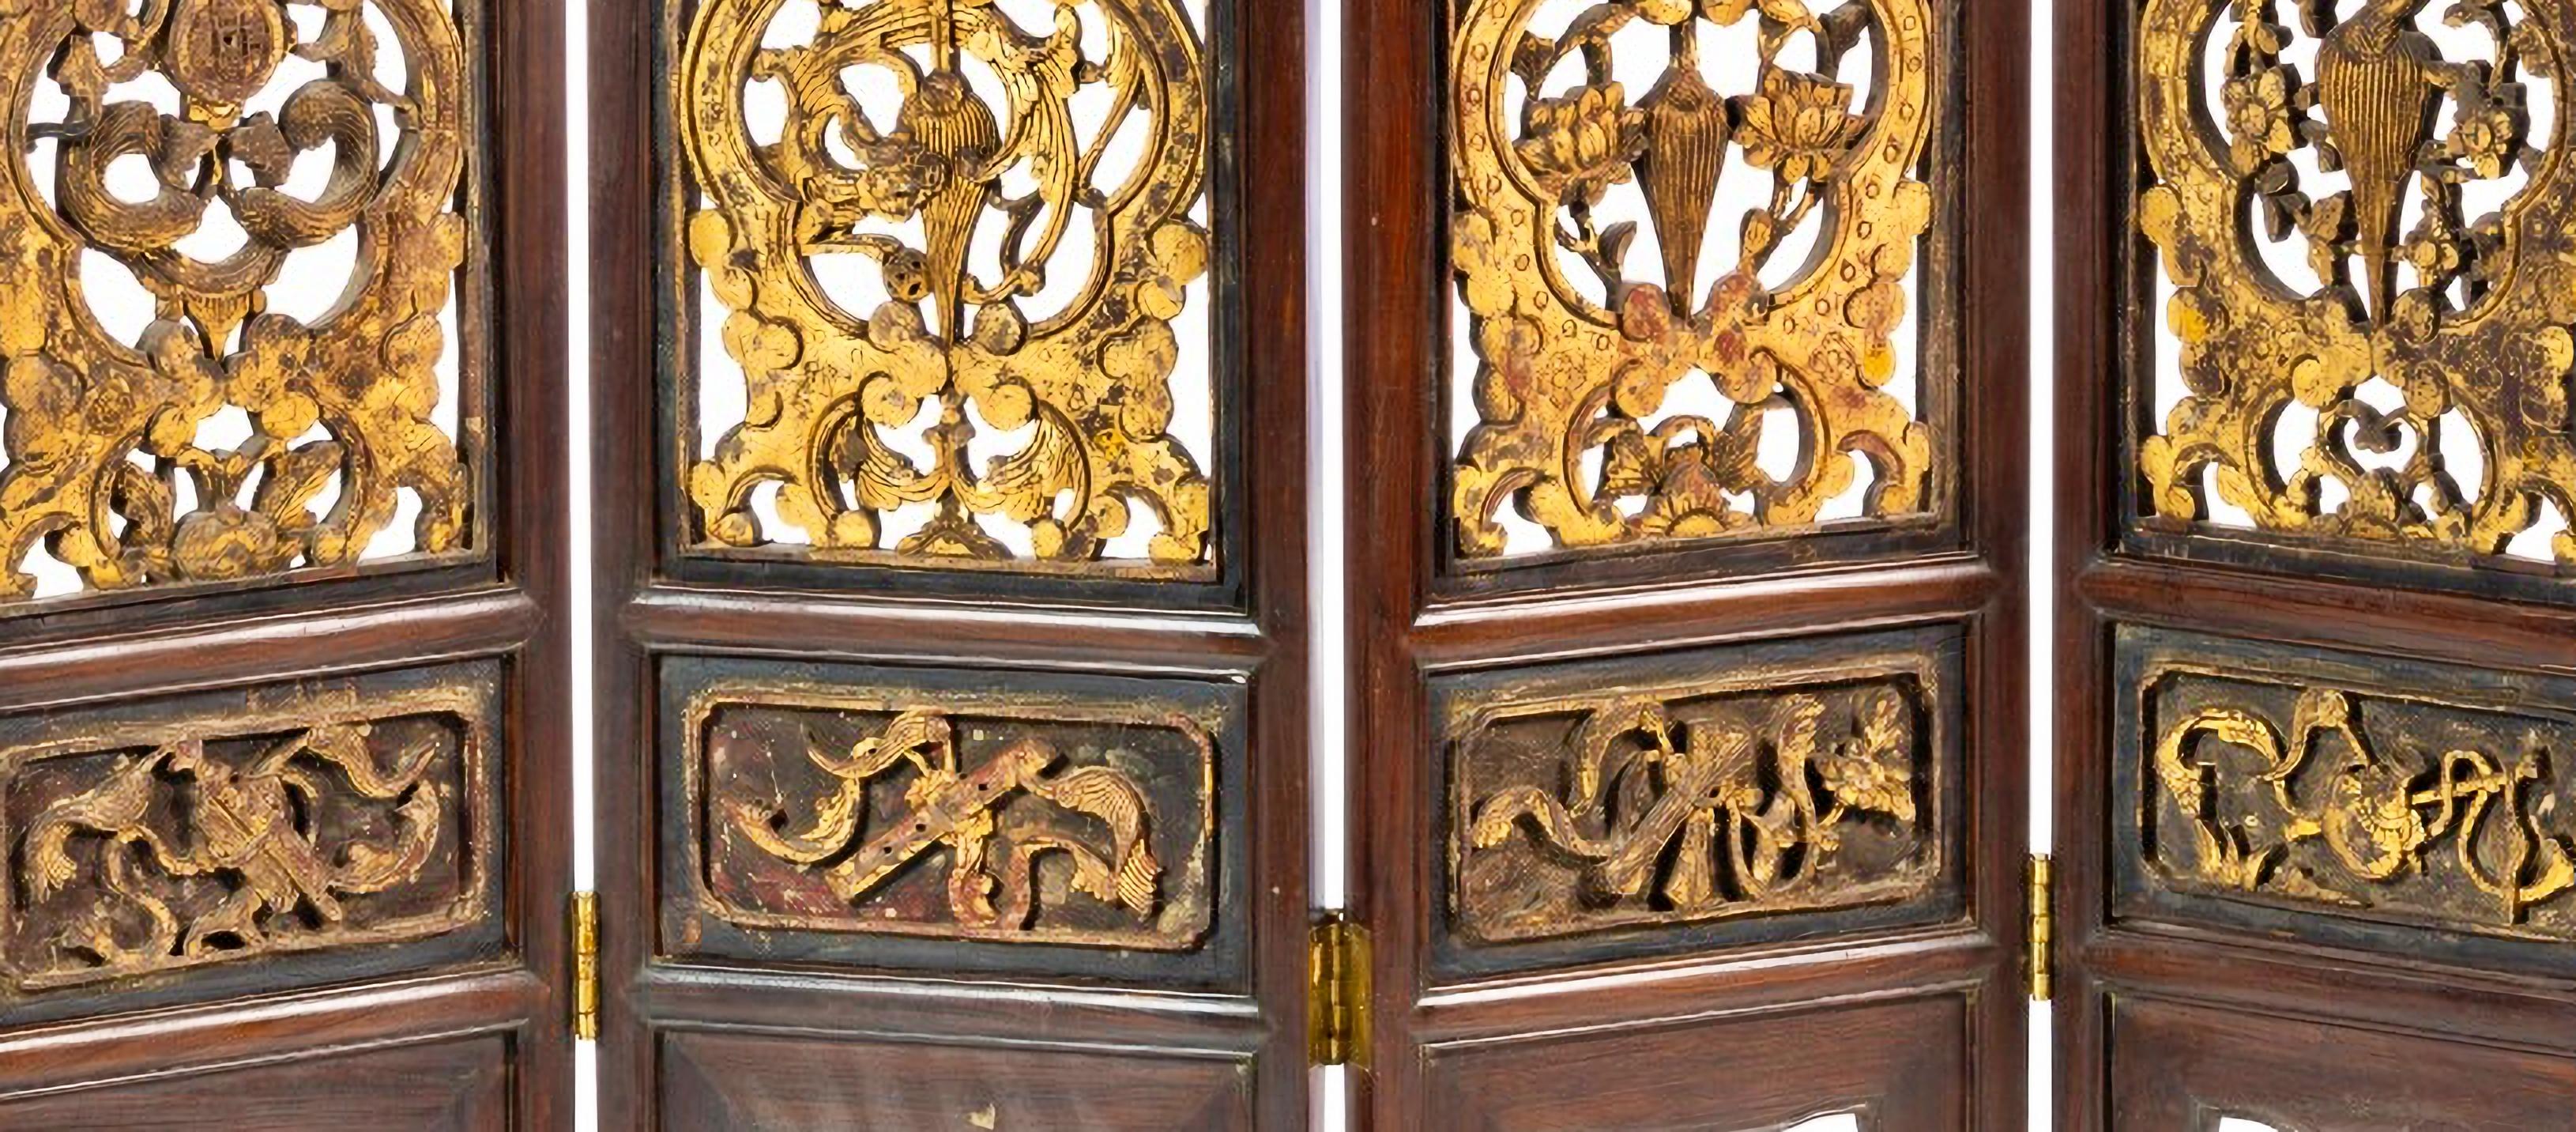 SEPARE DE CUATRO HOJAS

Siglo XIX chino
con tallas de madera dura, bisagras doradas y de bronce.
Medidas: 186 x 164 cm
buen estado